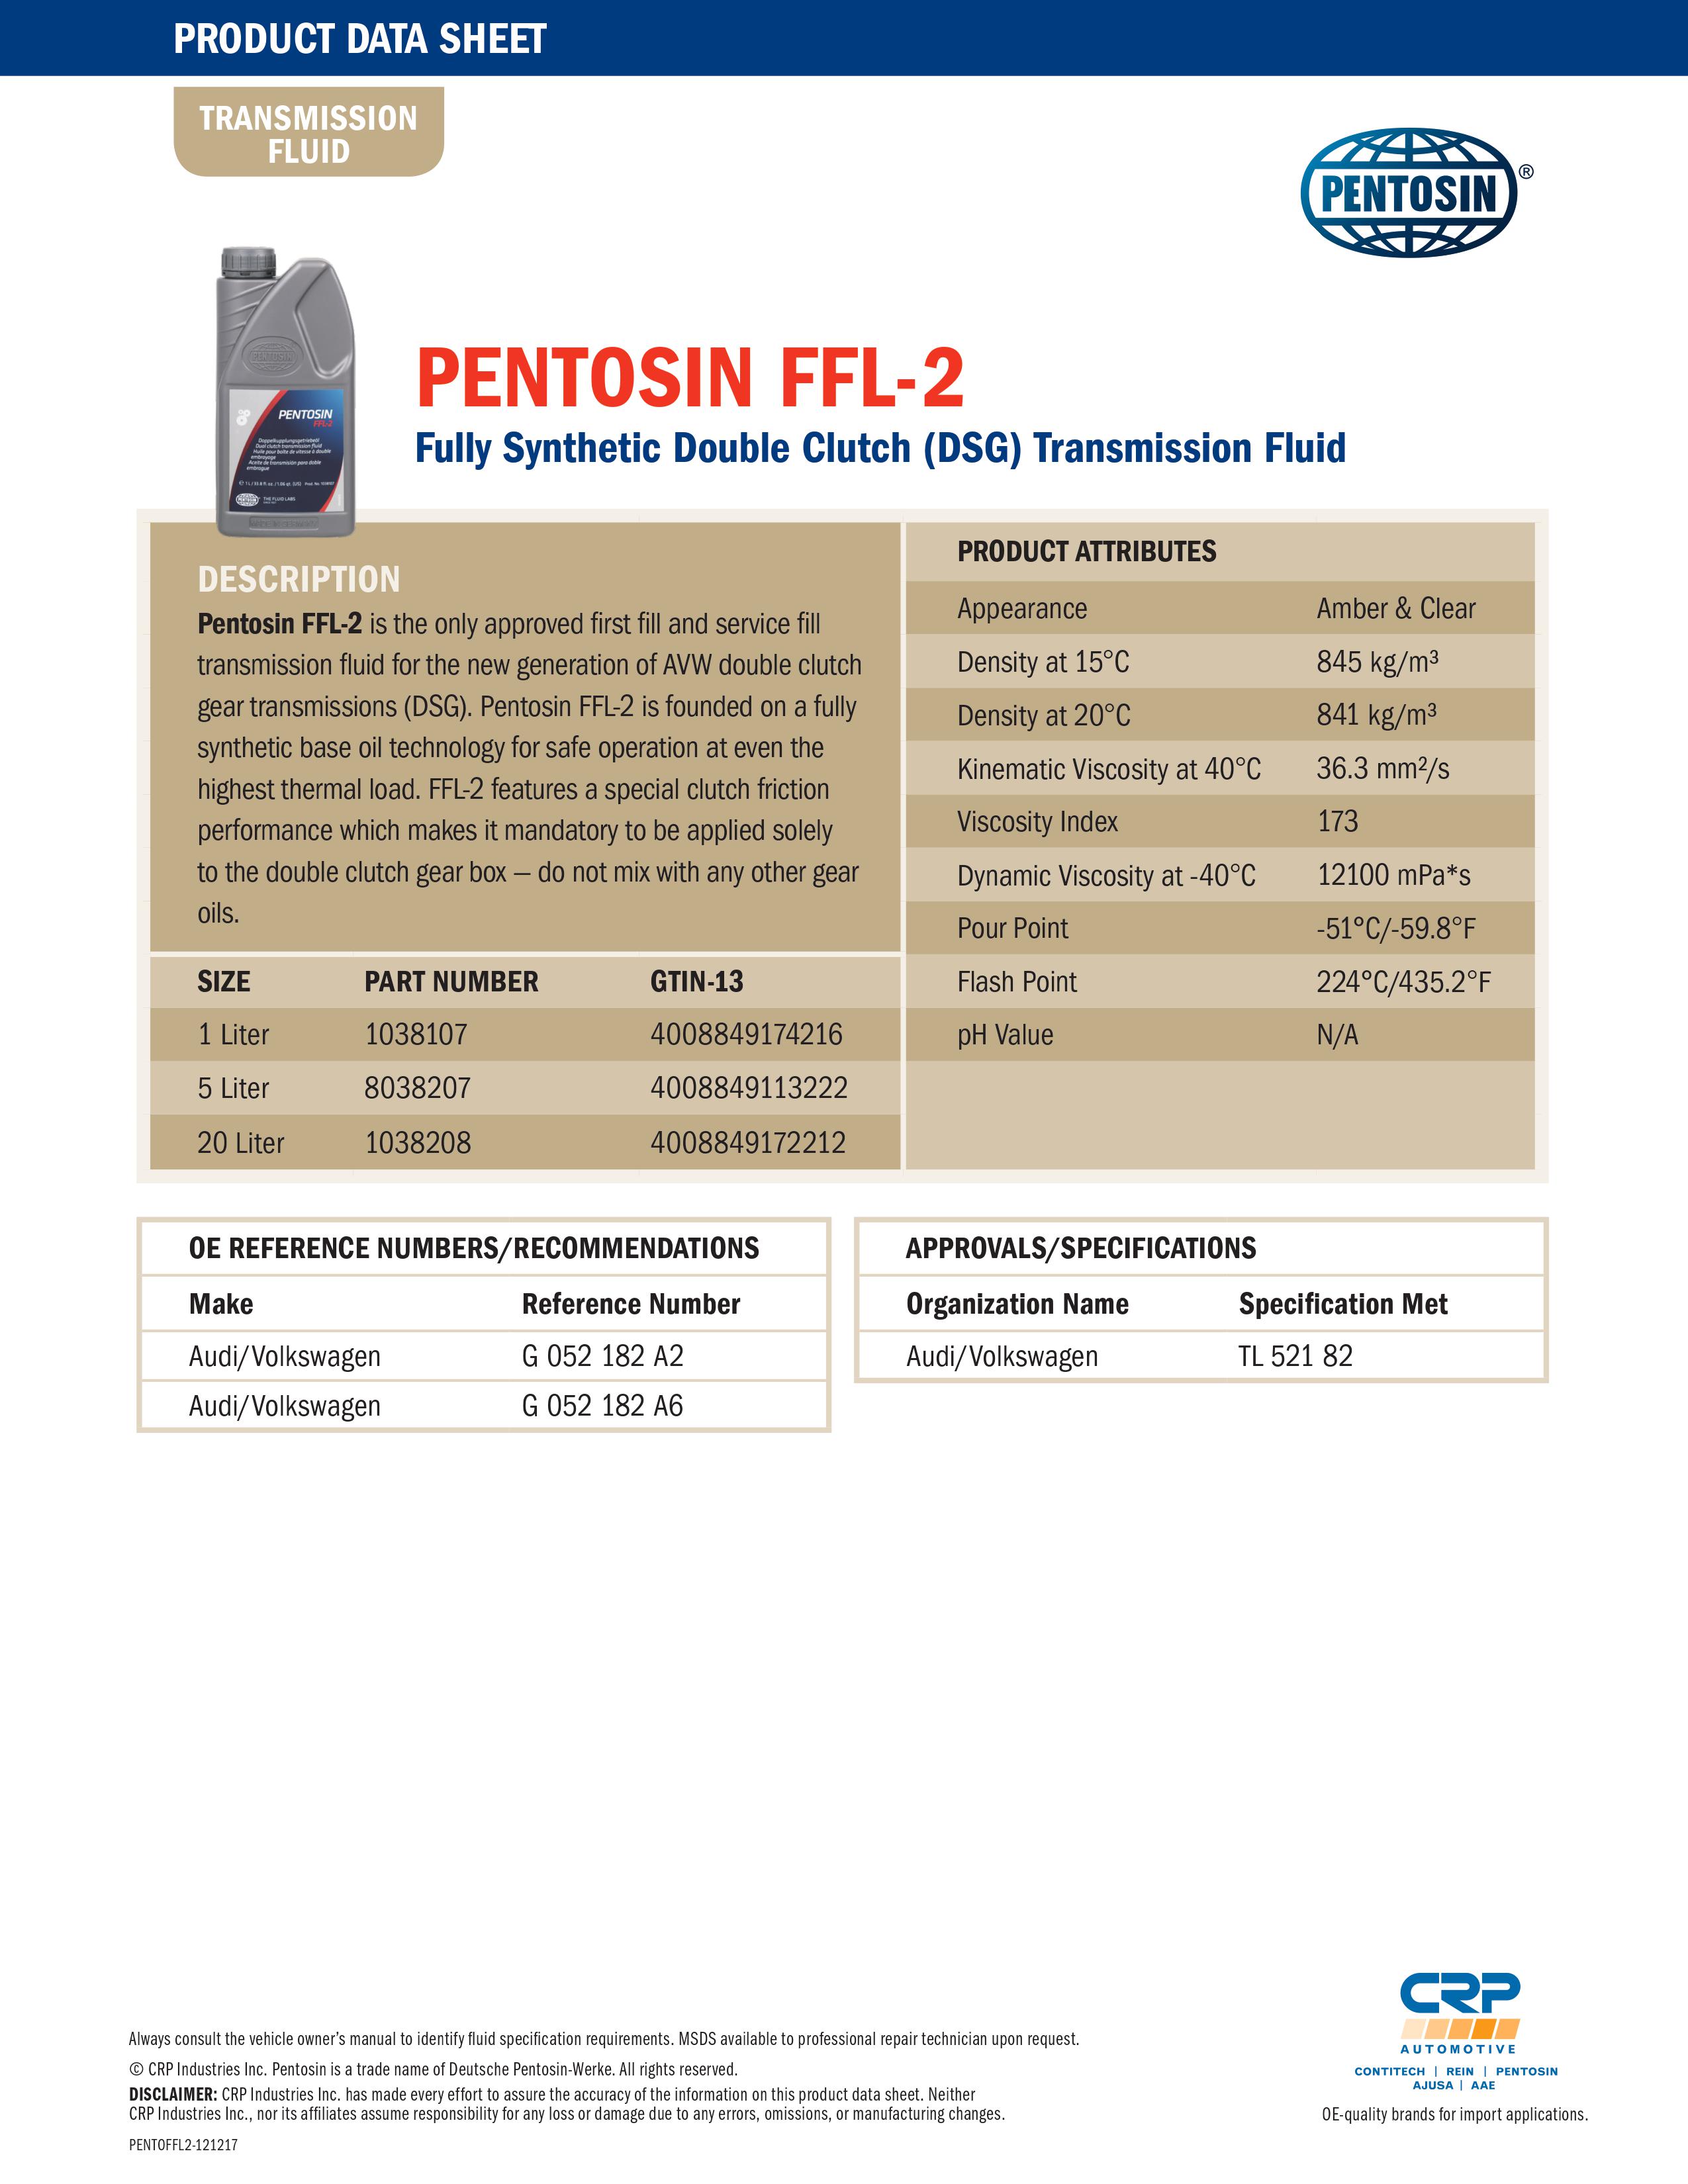 Olej przekładniowy Pentosin FFL-2, 1 l Pentosin 1038107